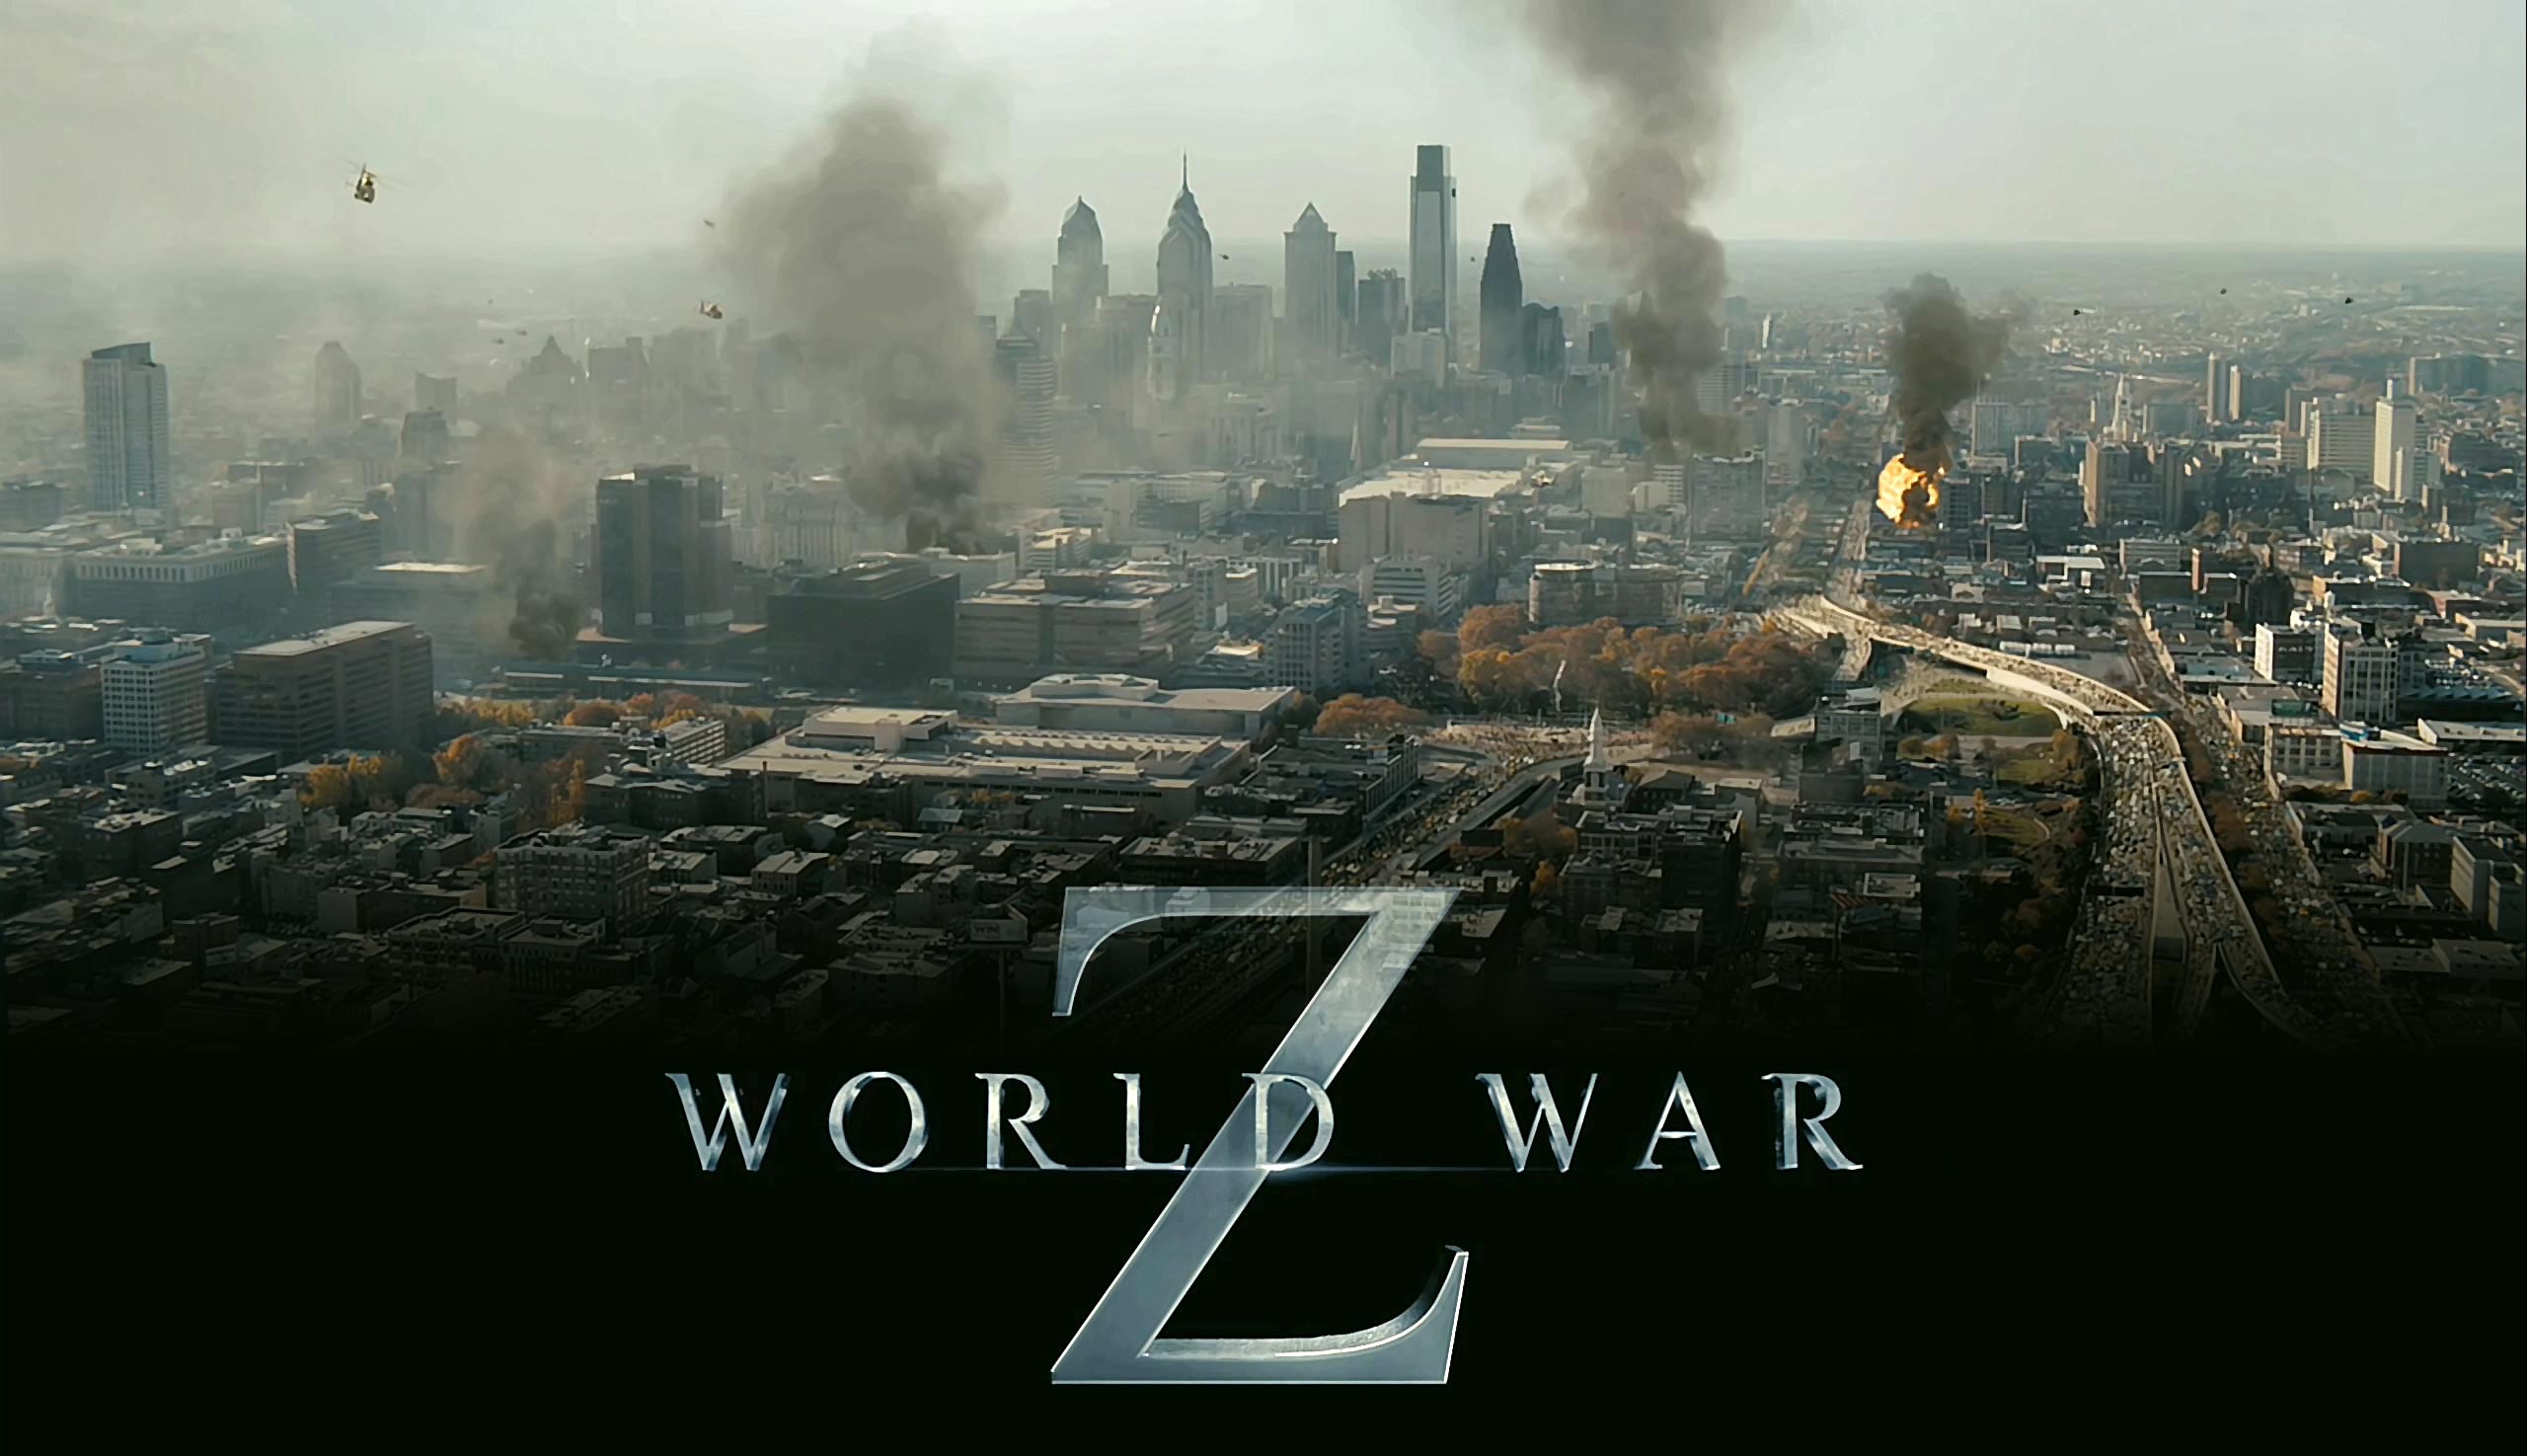 Movie World War Z 2560x1475